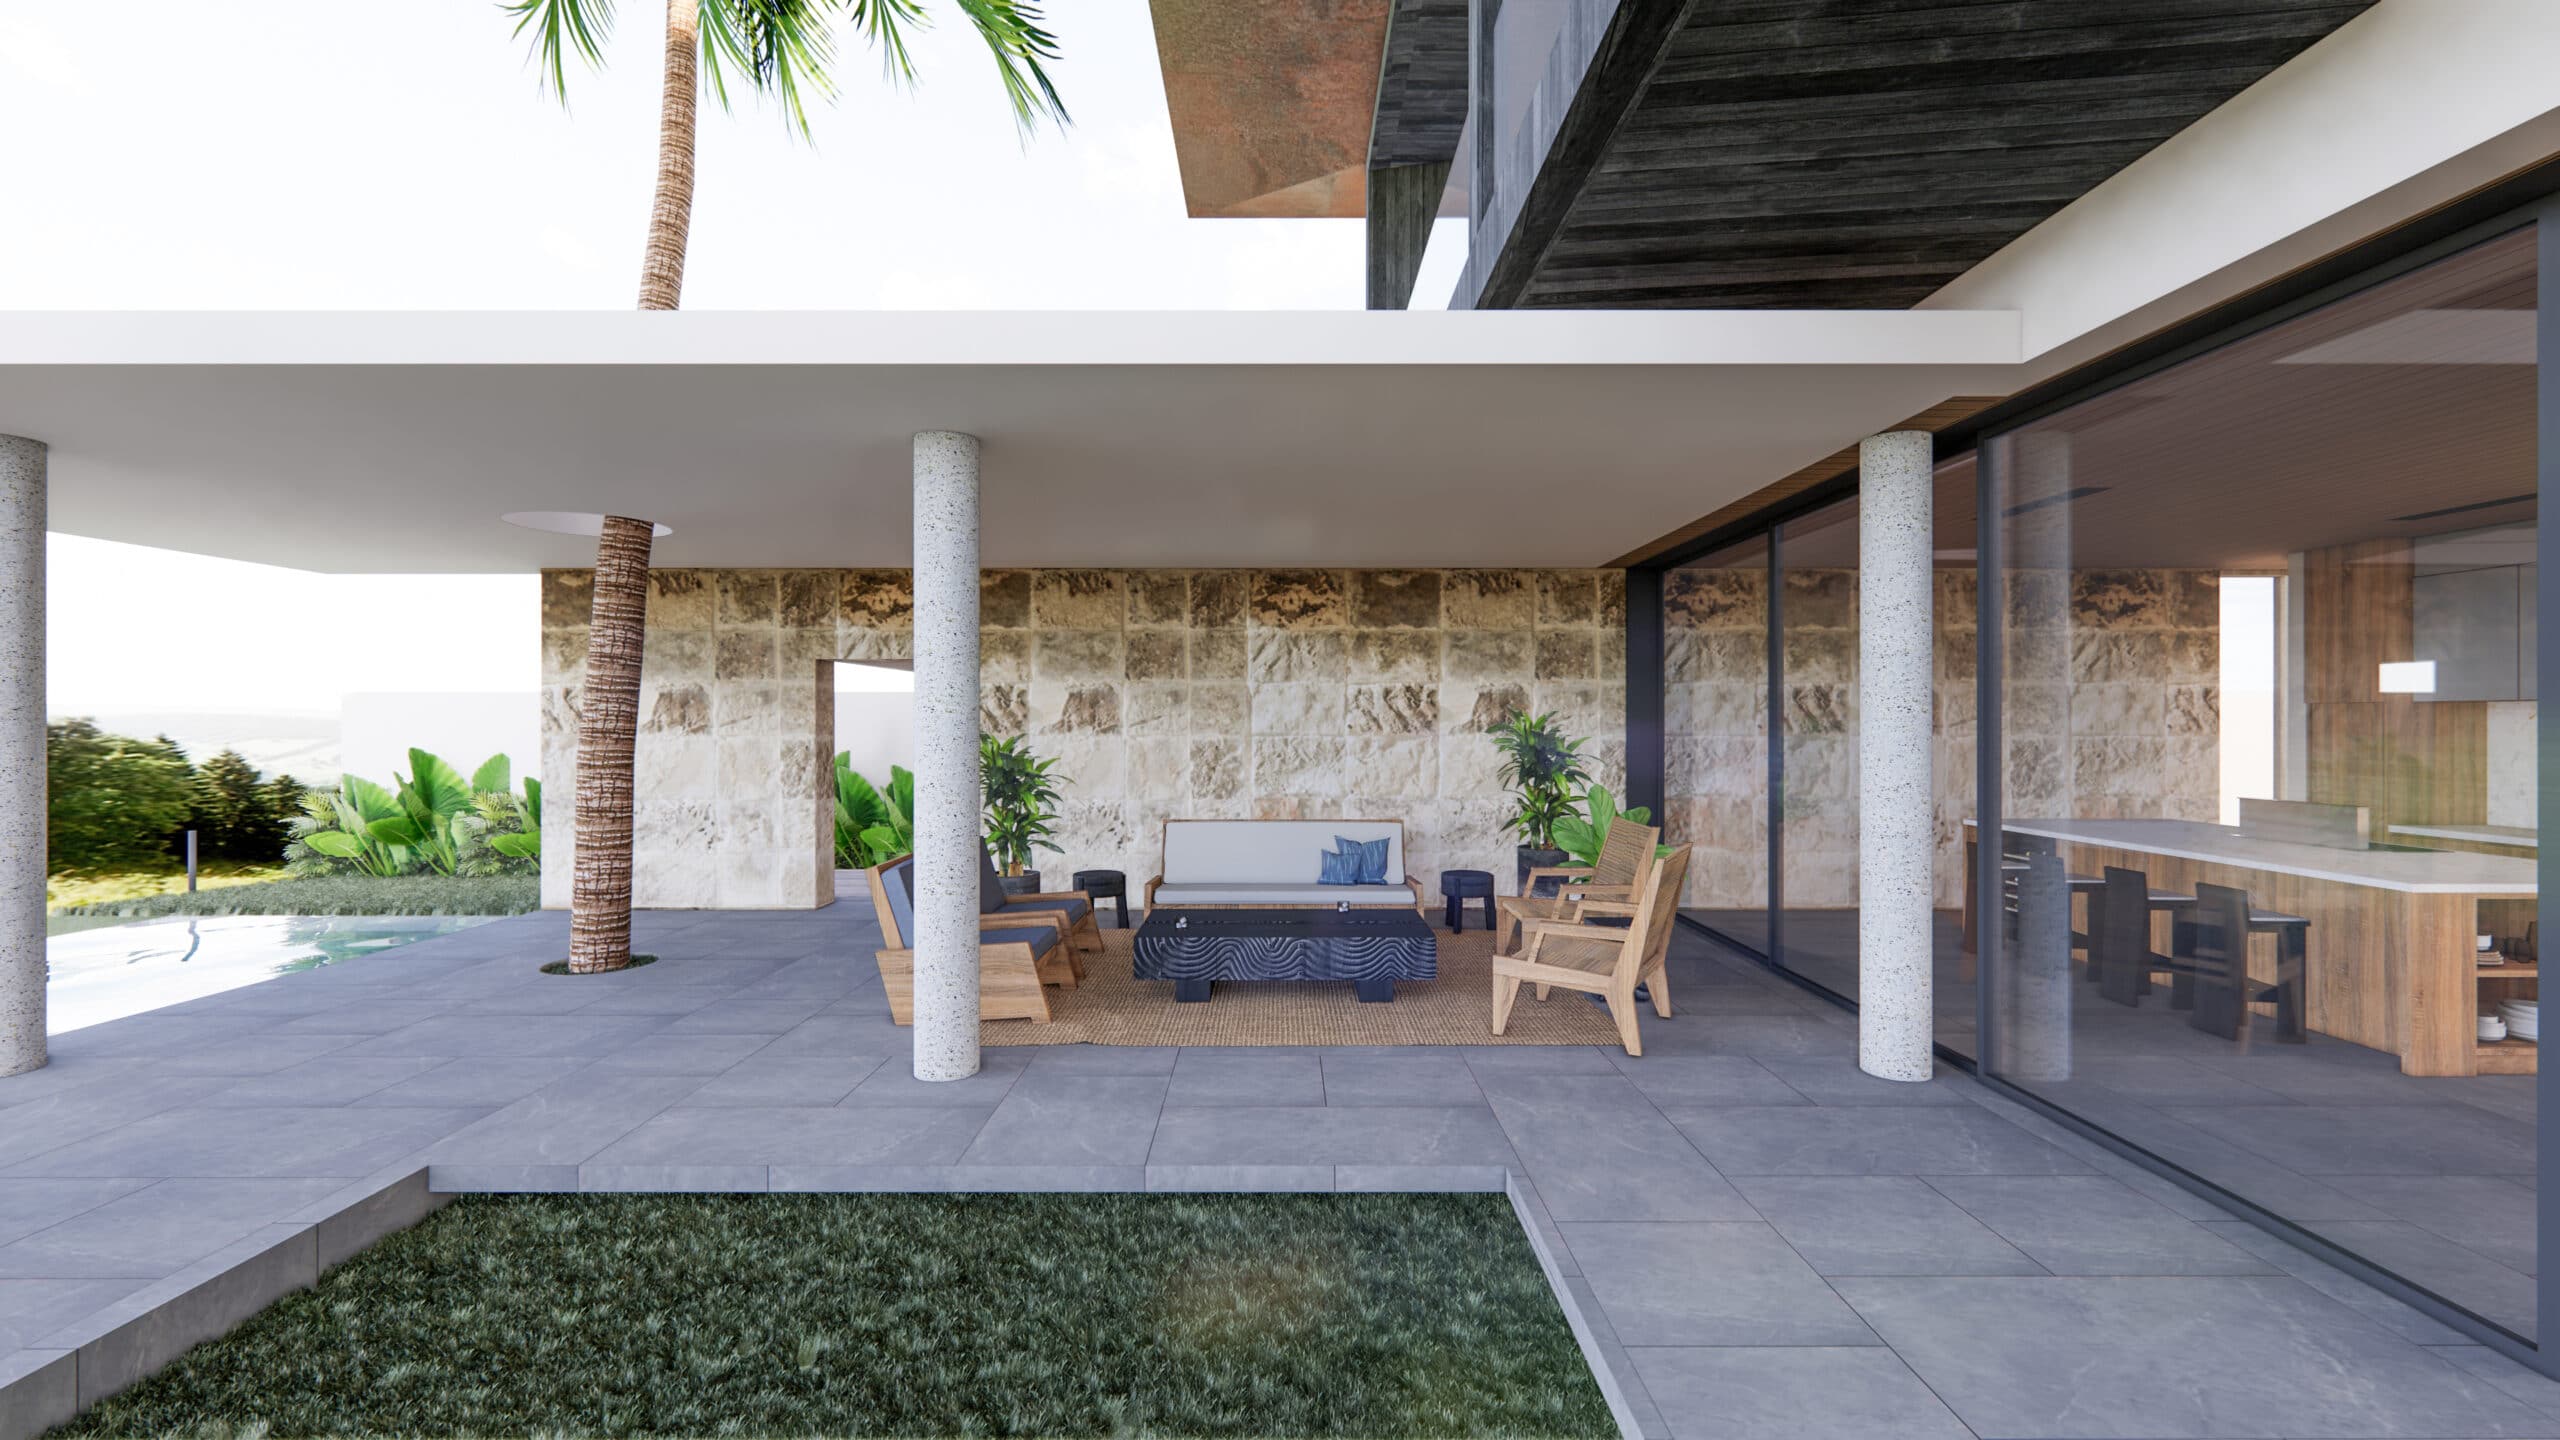 Design Assembly - Bingin Forest Villa - Bali Architect - Interior Design - Bali Villa - Wall Facade - Outside Area